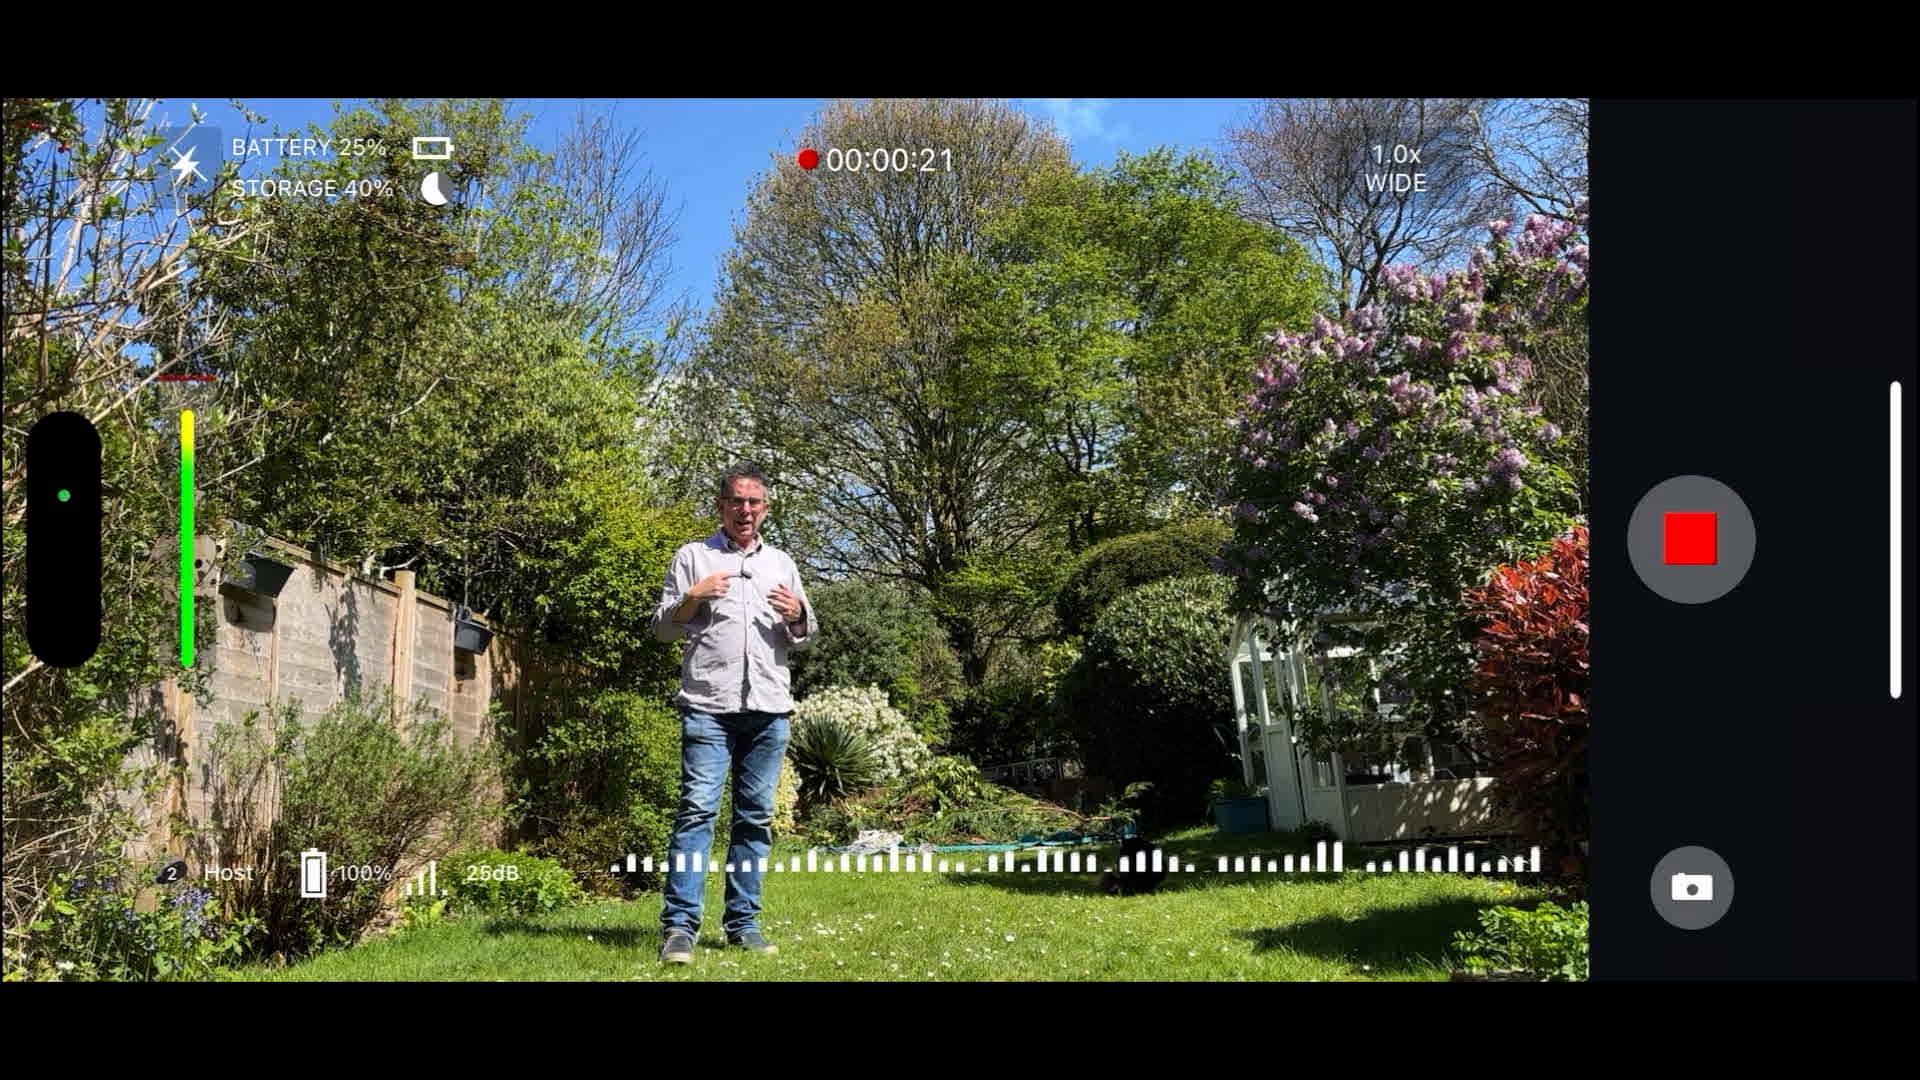 لقطة شاشة من Shure MoveMic تظهر رجلاً في حديقة